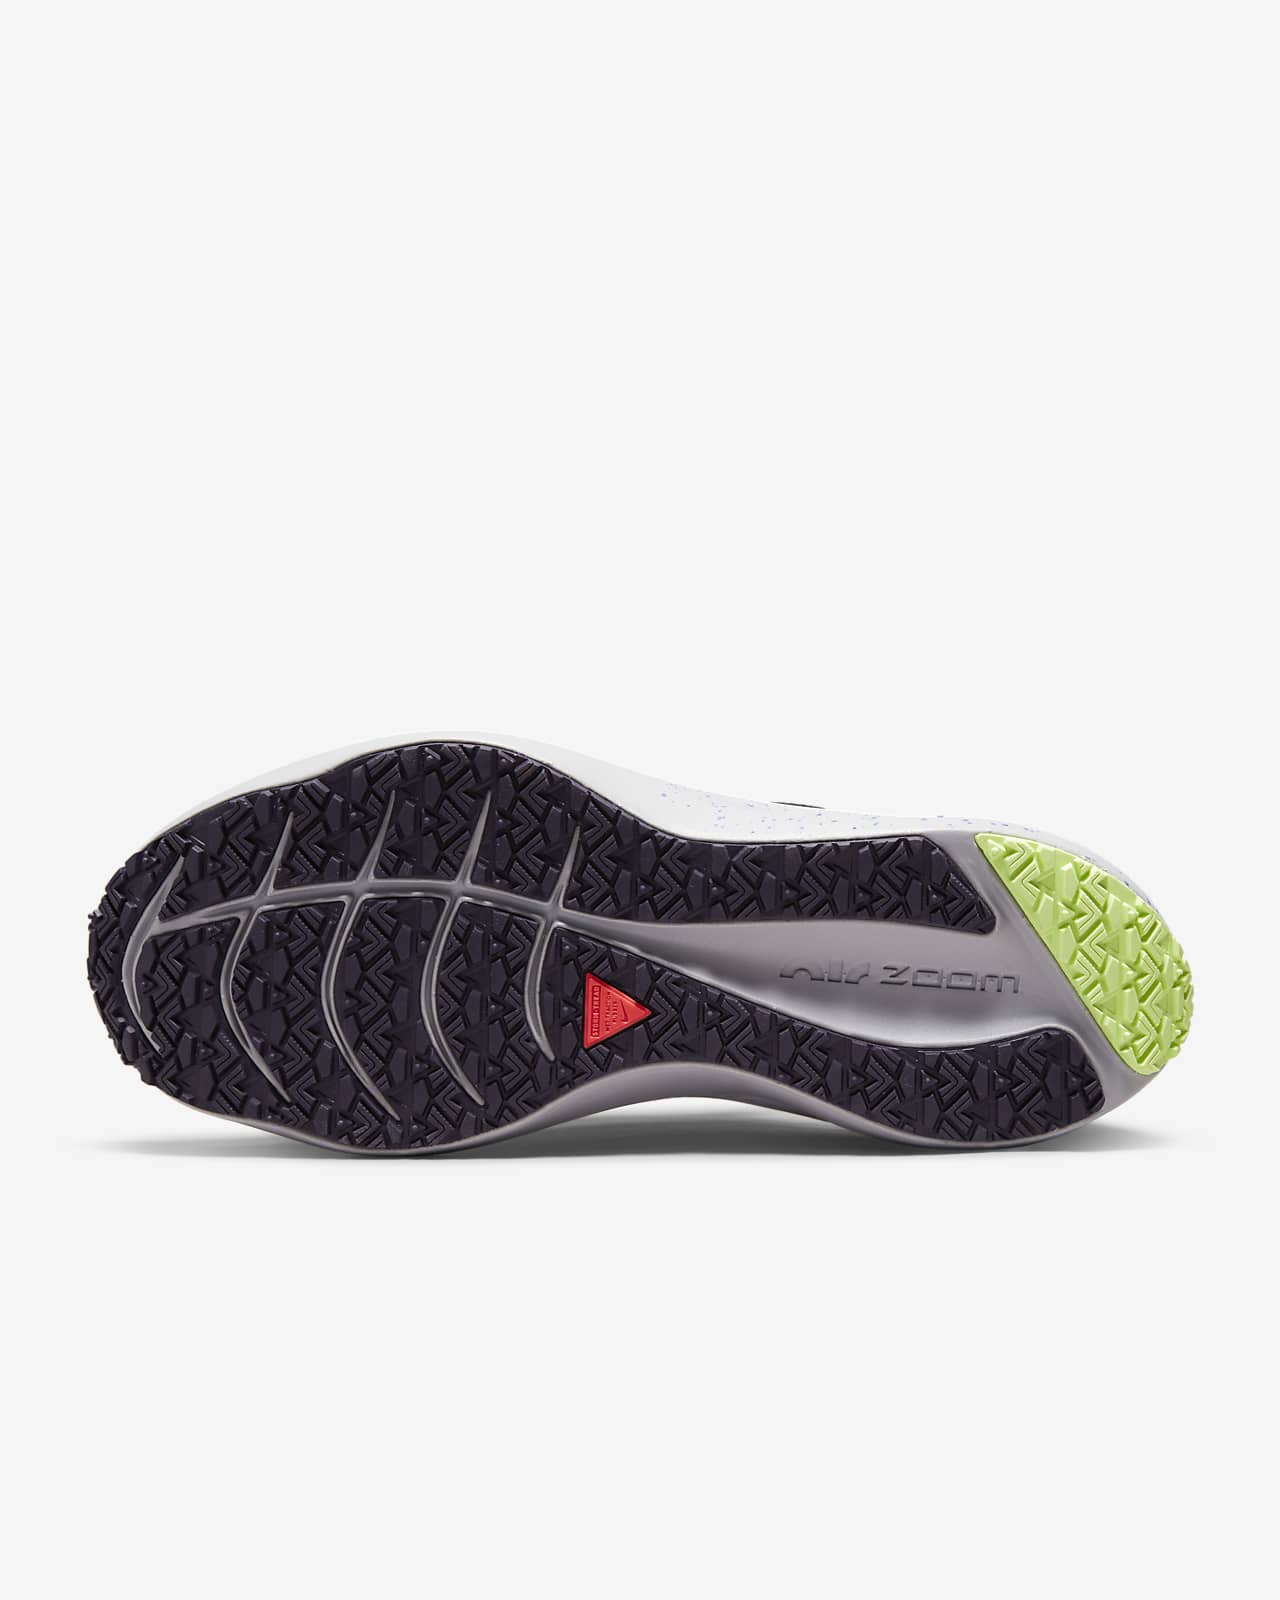 Calzado de running en carretera resistente a las inclemencias del tiempo para mujer Nike Zoom Winflo Shield. Nike.com